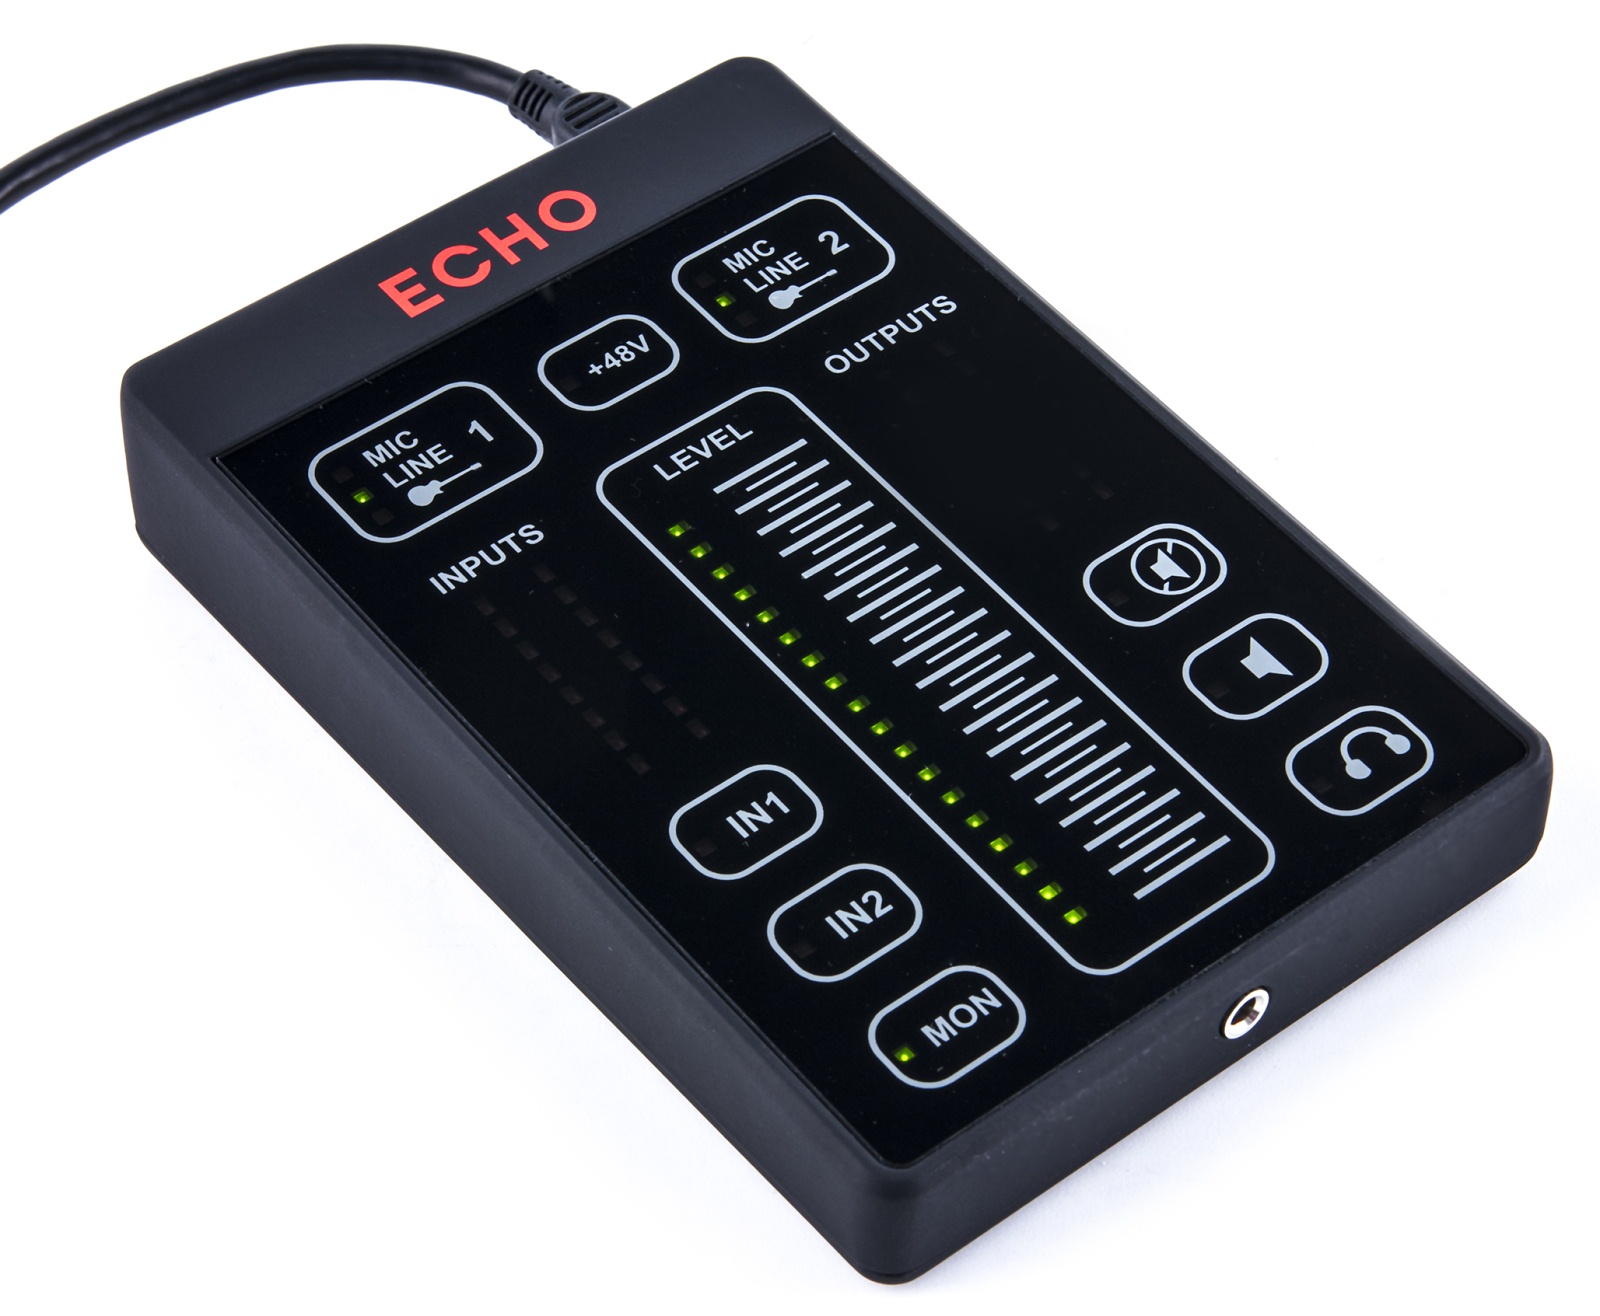 Интерфейс Echo 2 довольно миниатюрный: 137 x 92 x 26 мм.